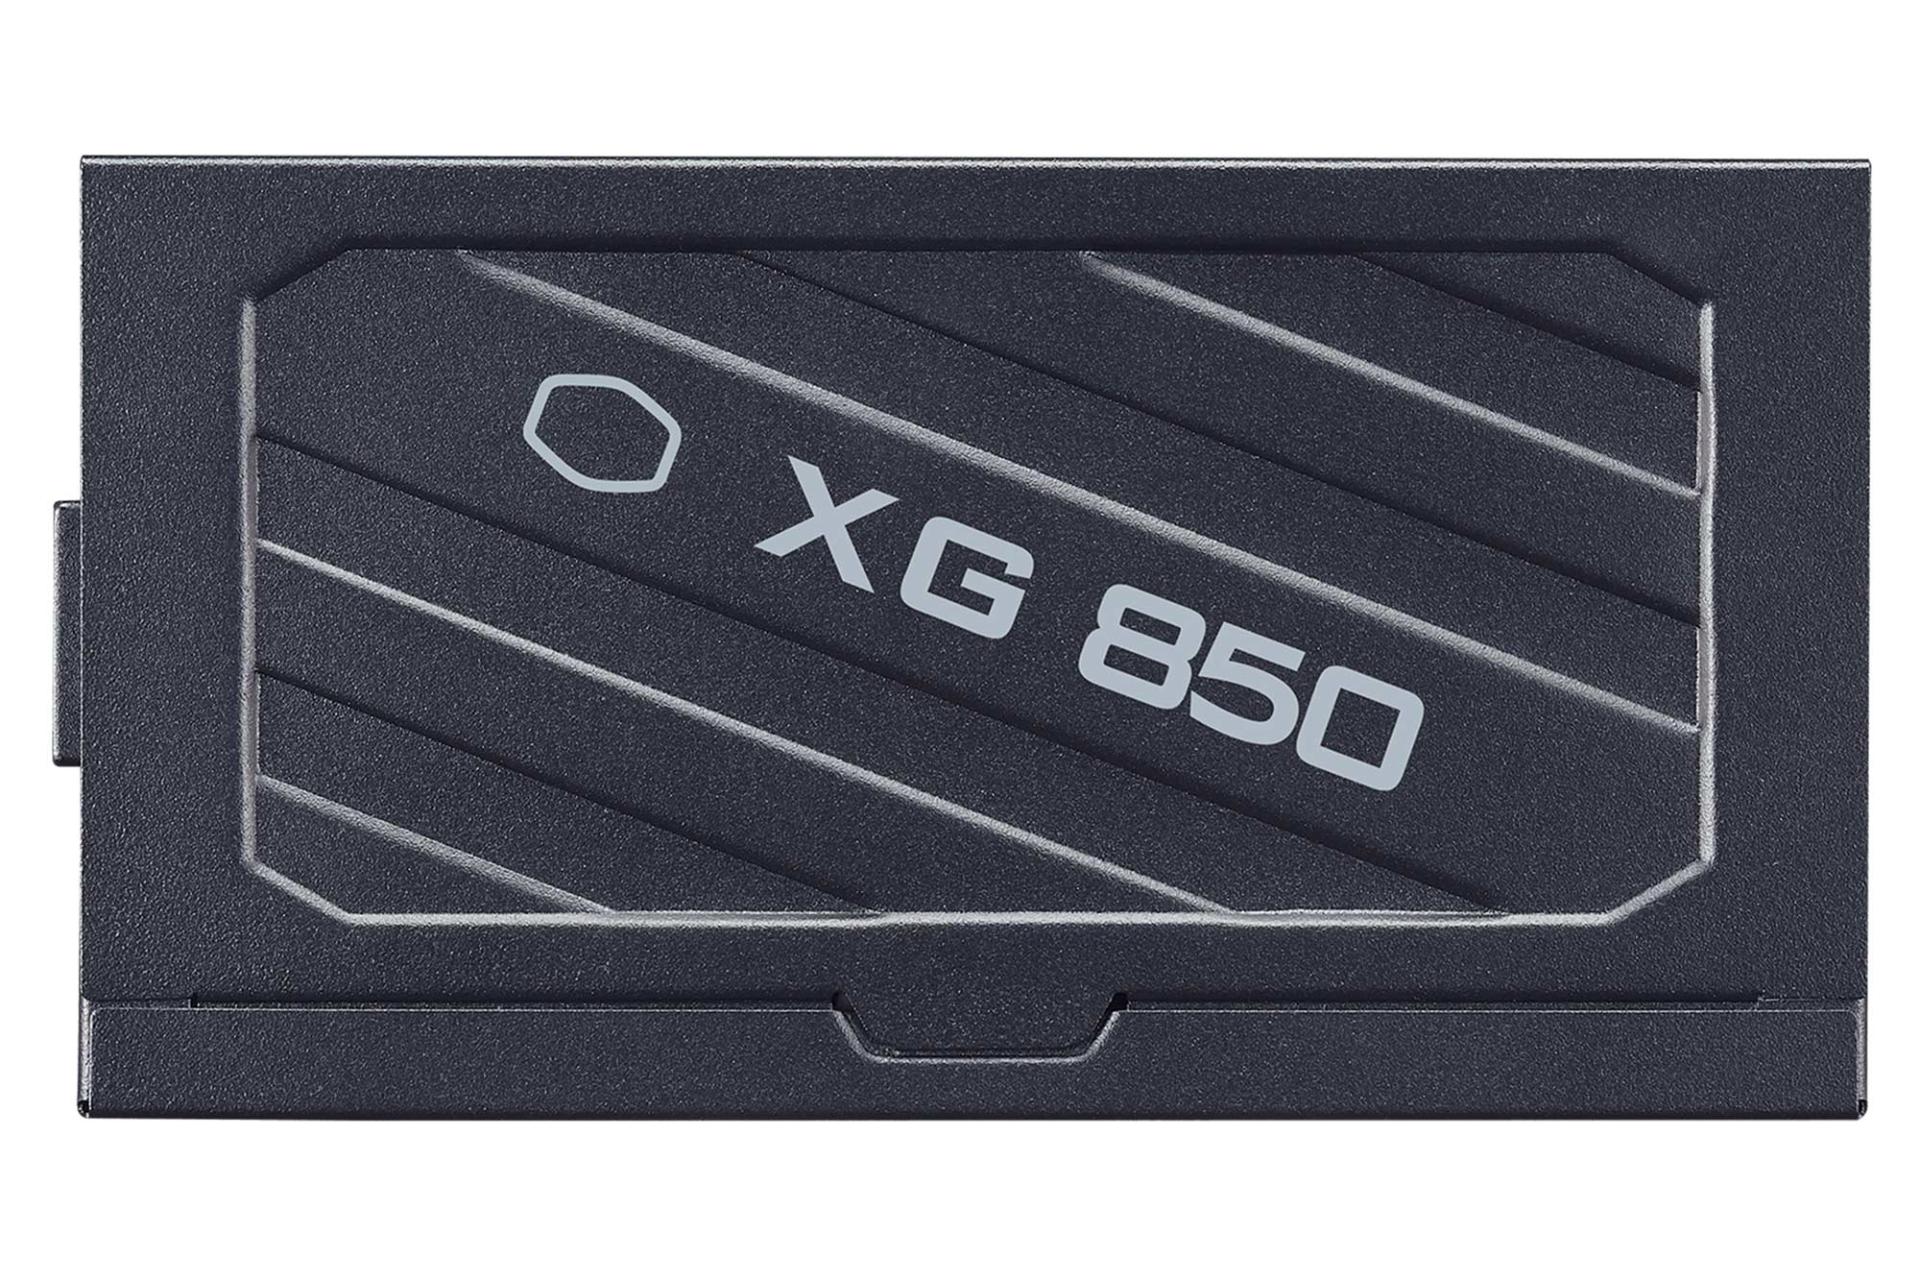 پاور کامپیوتر کولر مستر Cooler Master XG850 Platinum با توان 850 وات نمای کنار